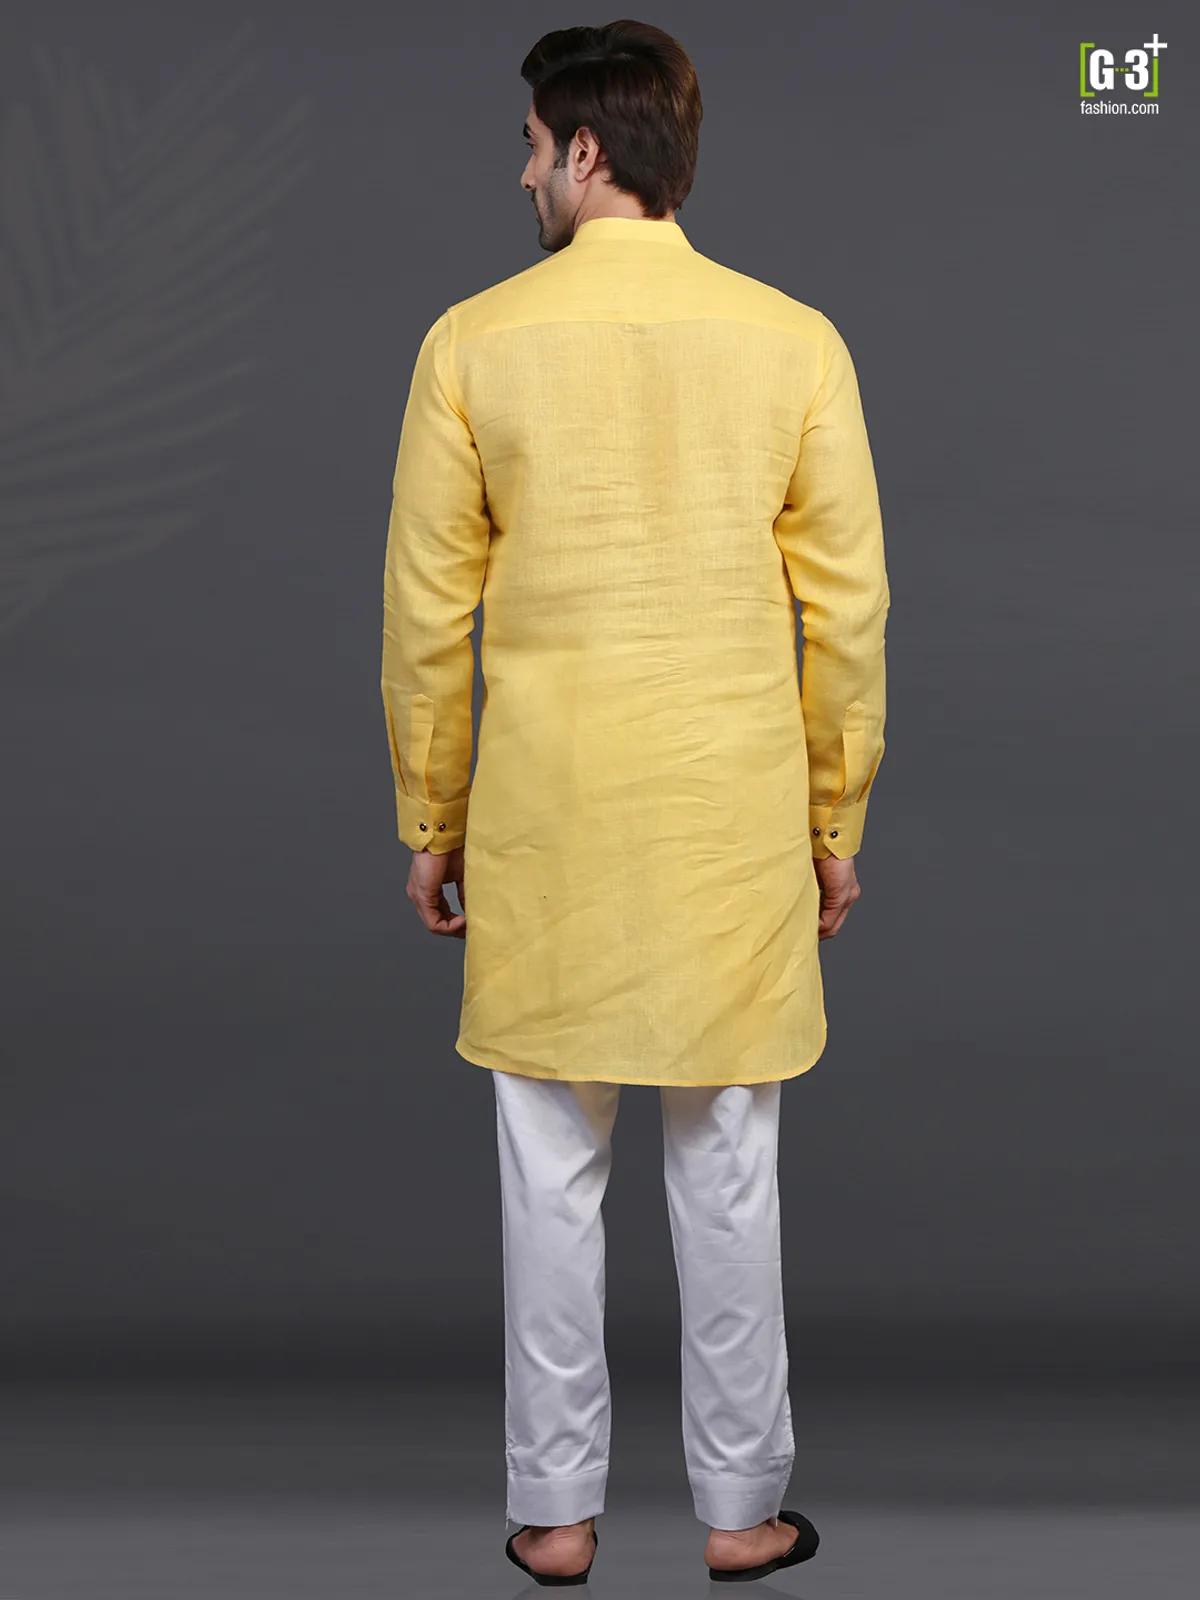 Yellow linen full sleeeves kurta suit